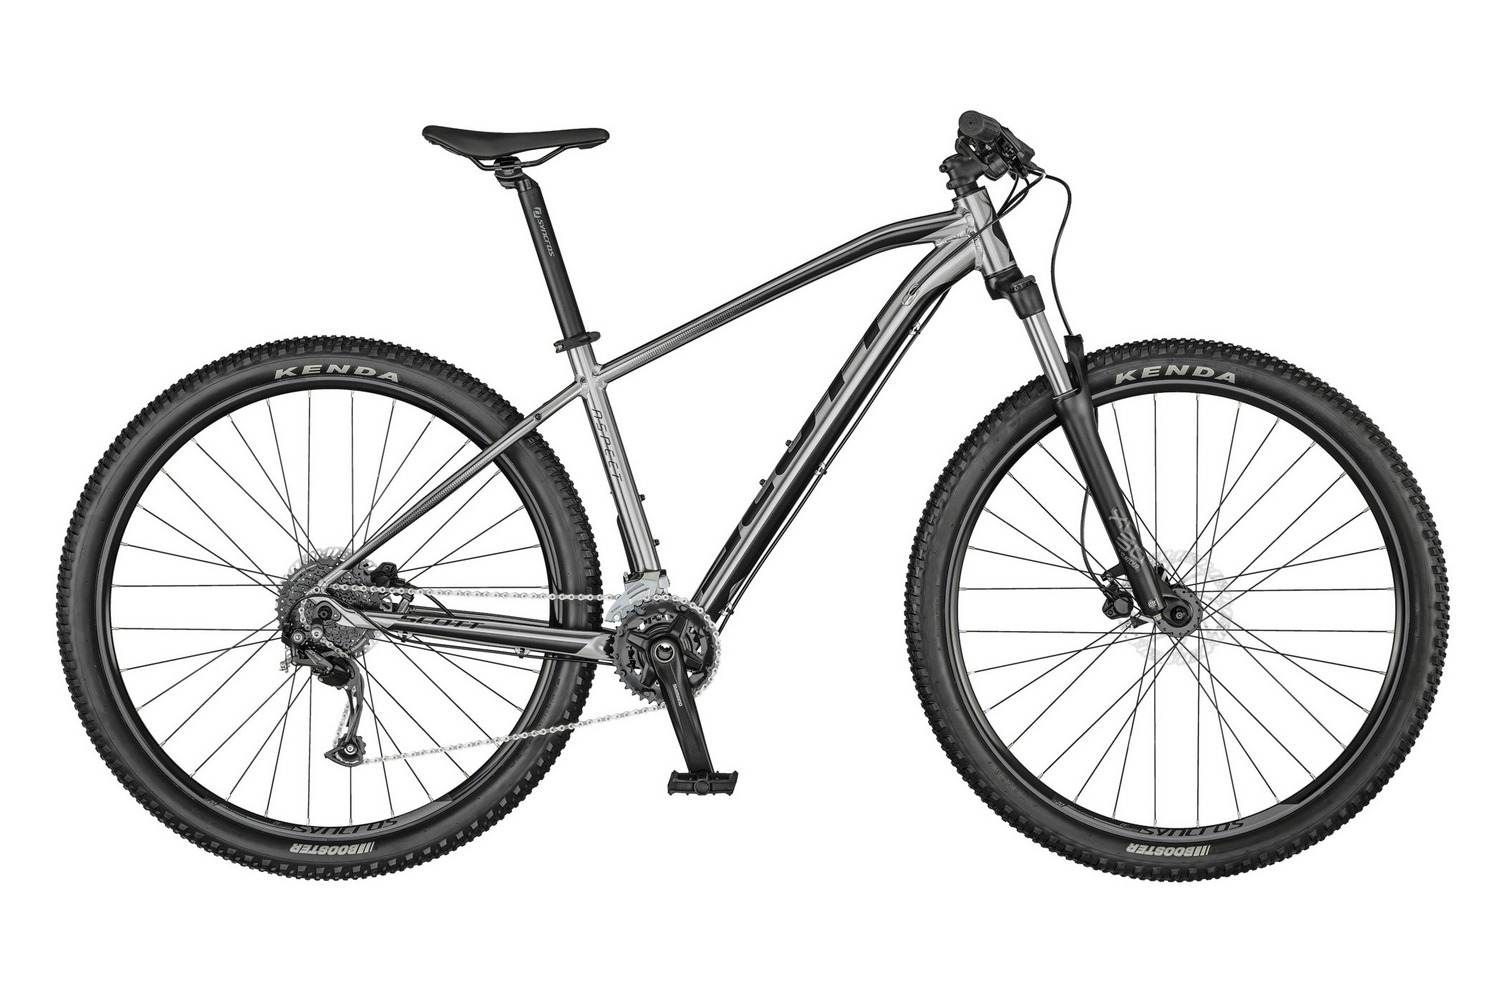  Отзывы о Горном велосипеде Scott Aspect 950 (2021) 2021